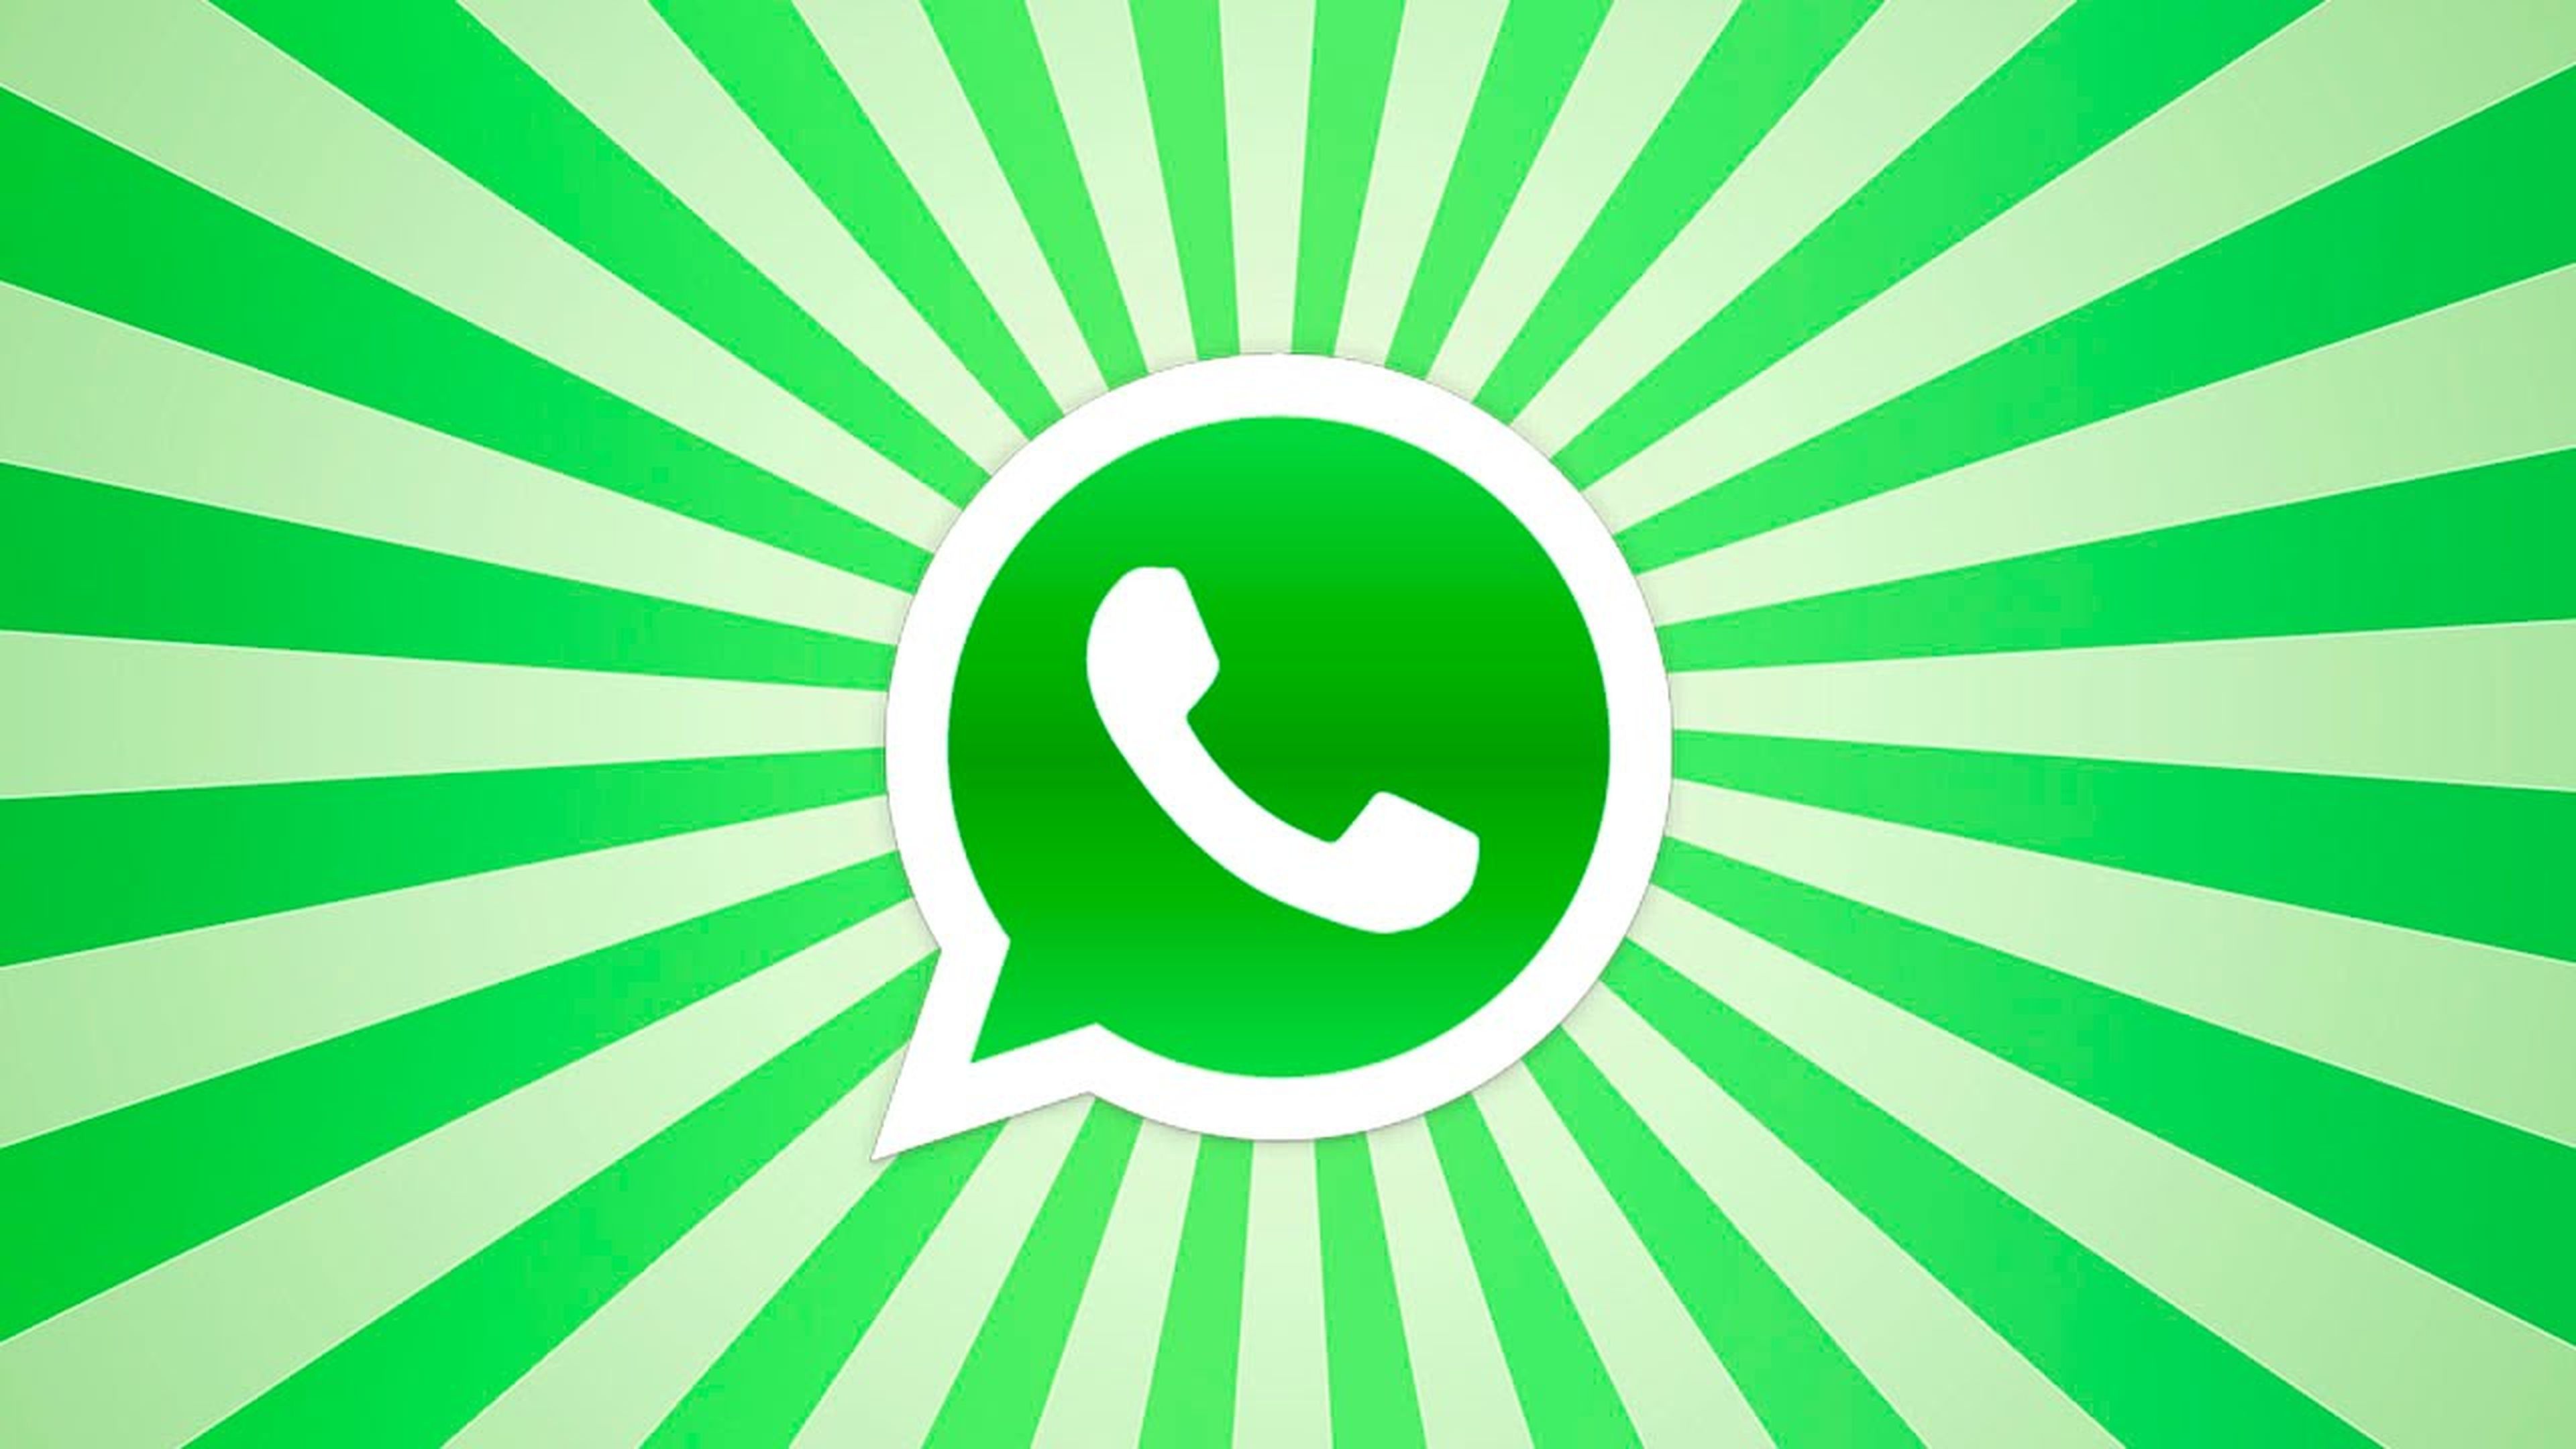 Los estados de WhatsApp contarán con textos y fondos a todo color